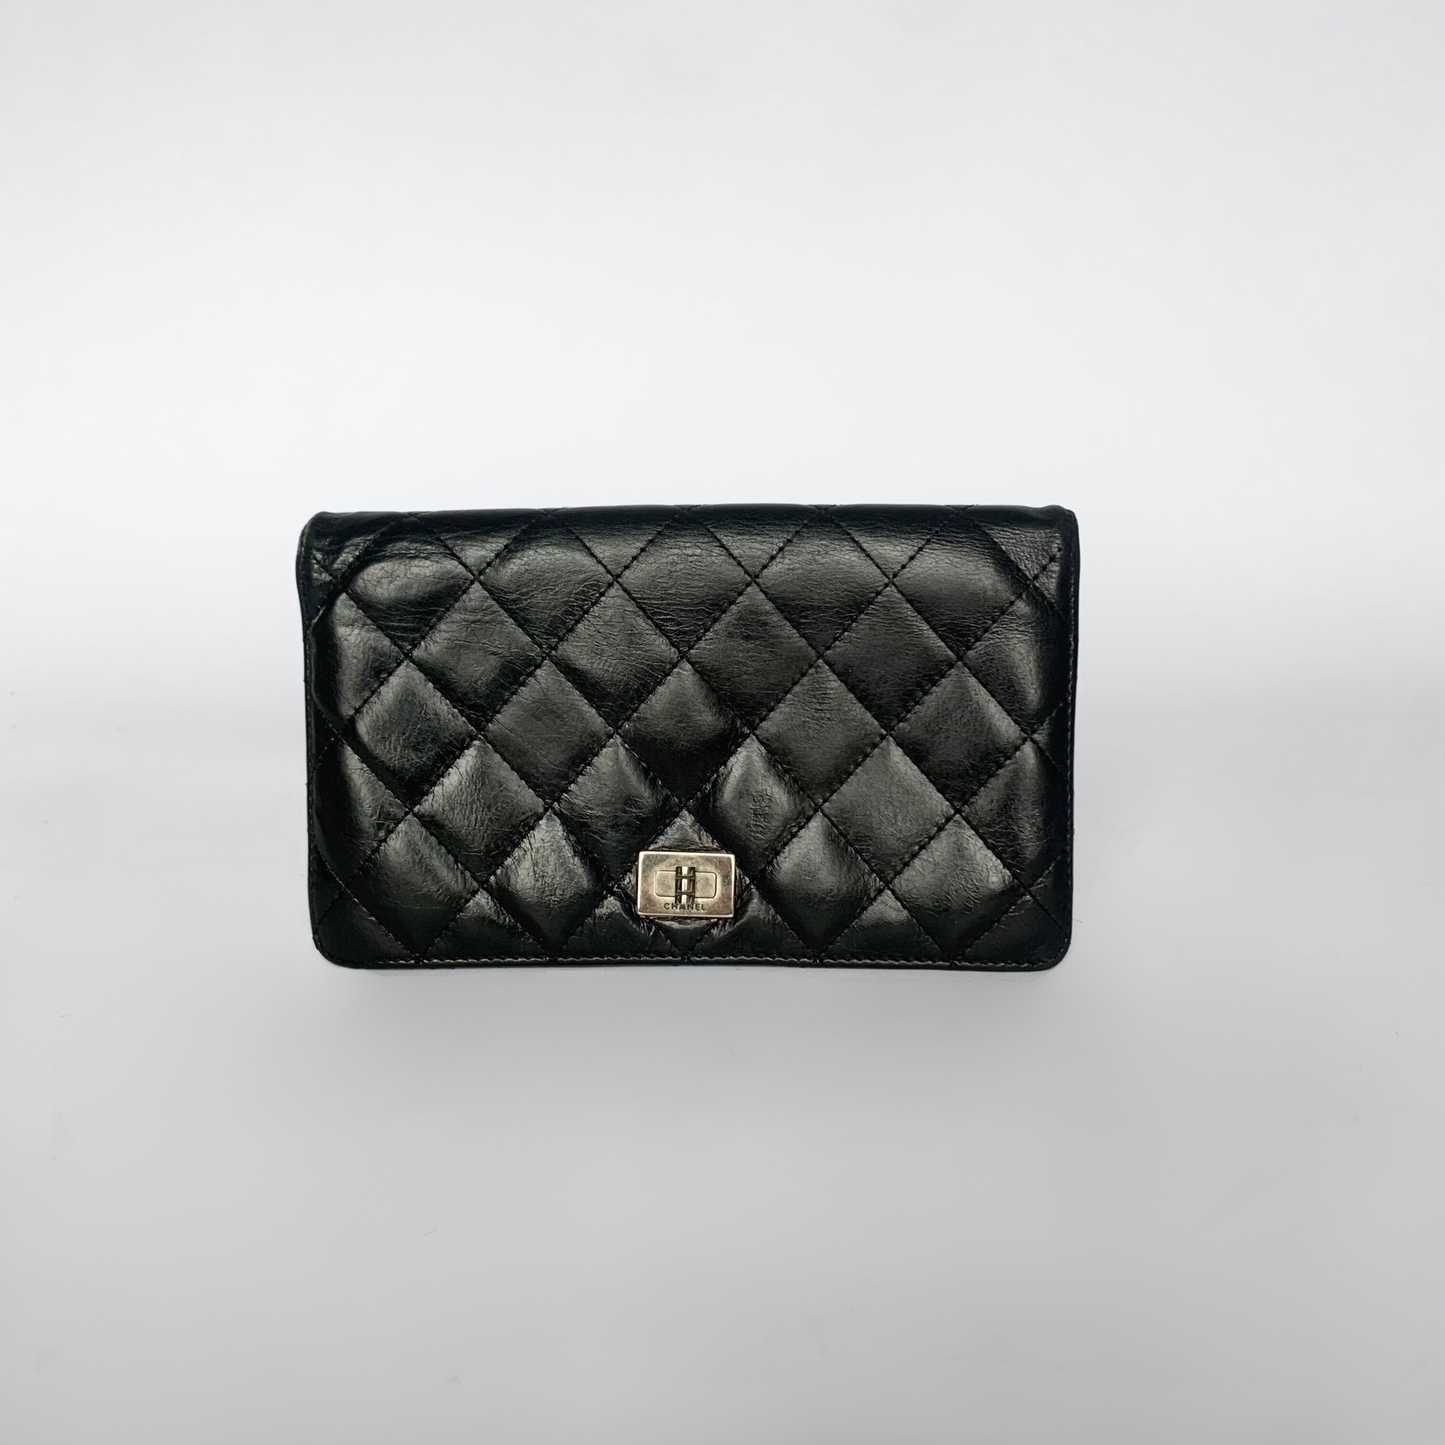 Chanel Chanel Cartera 2.55 Piel Cordero - Carteras - Etoile Luxury Vintage